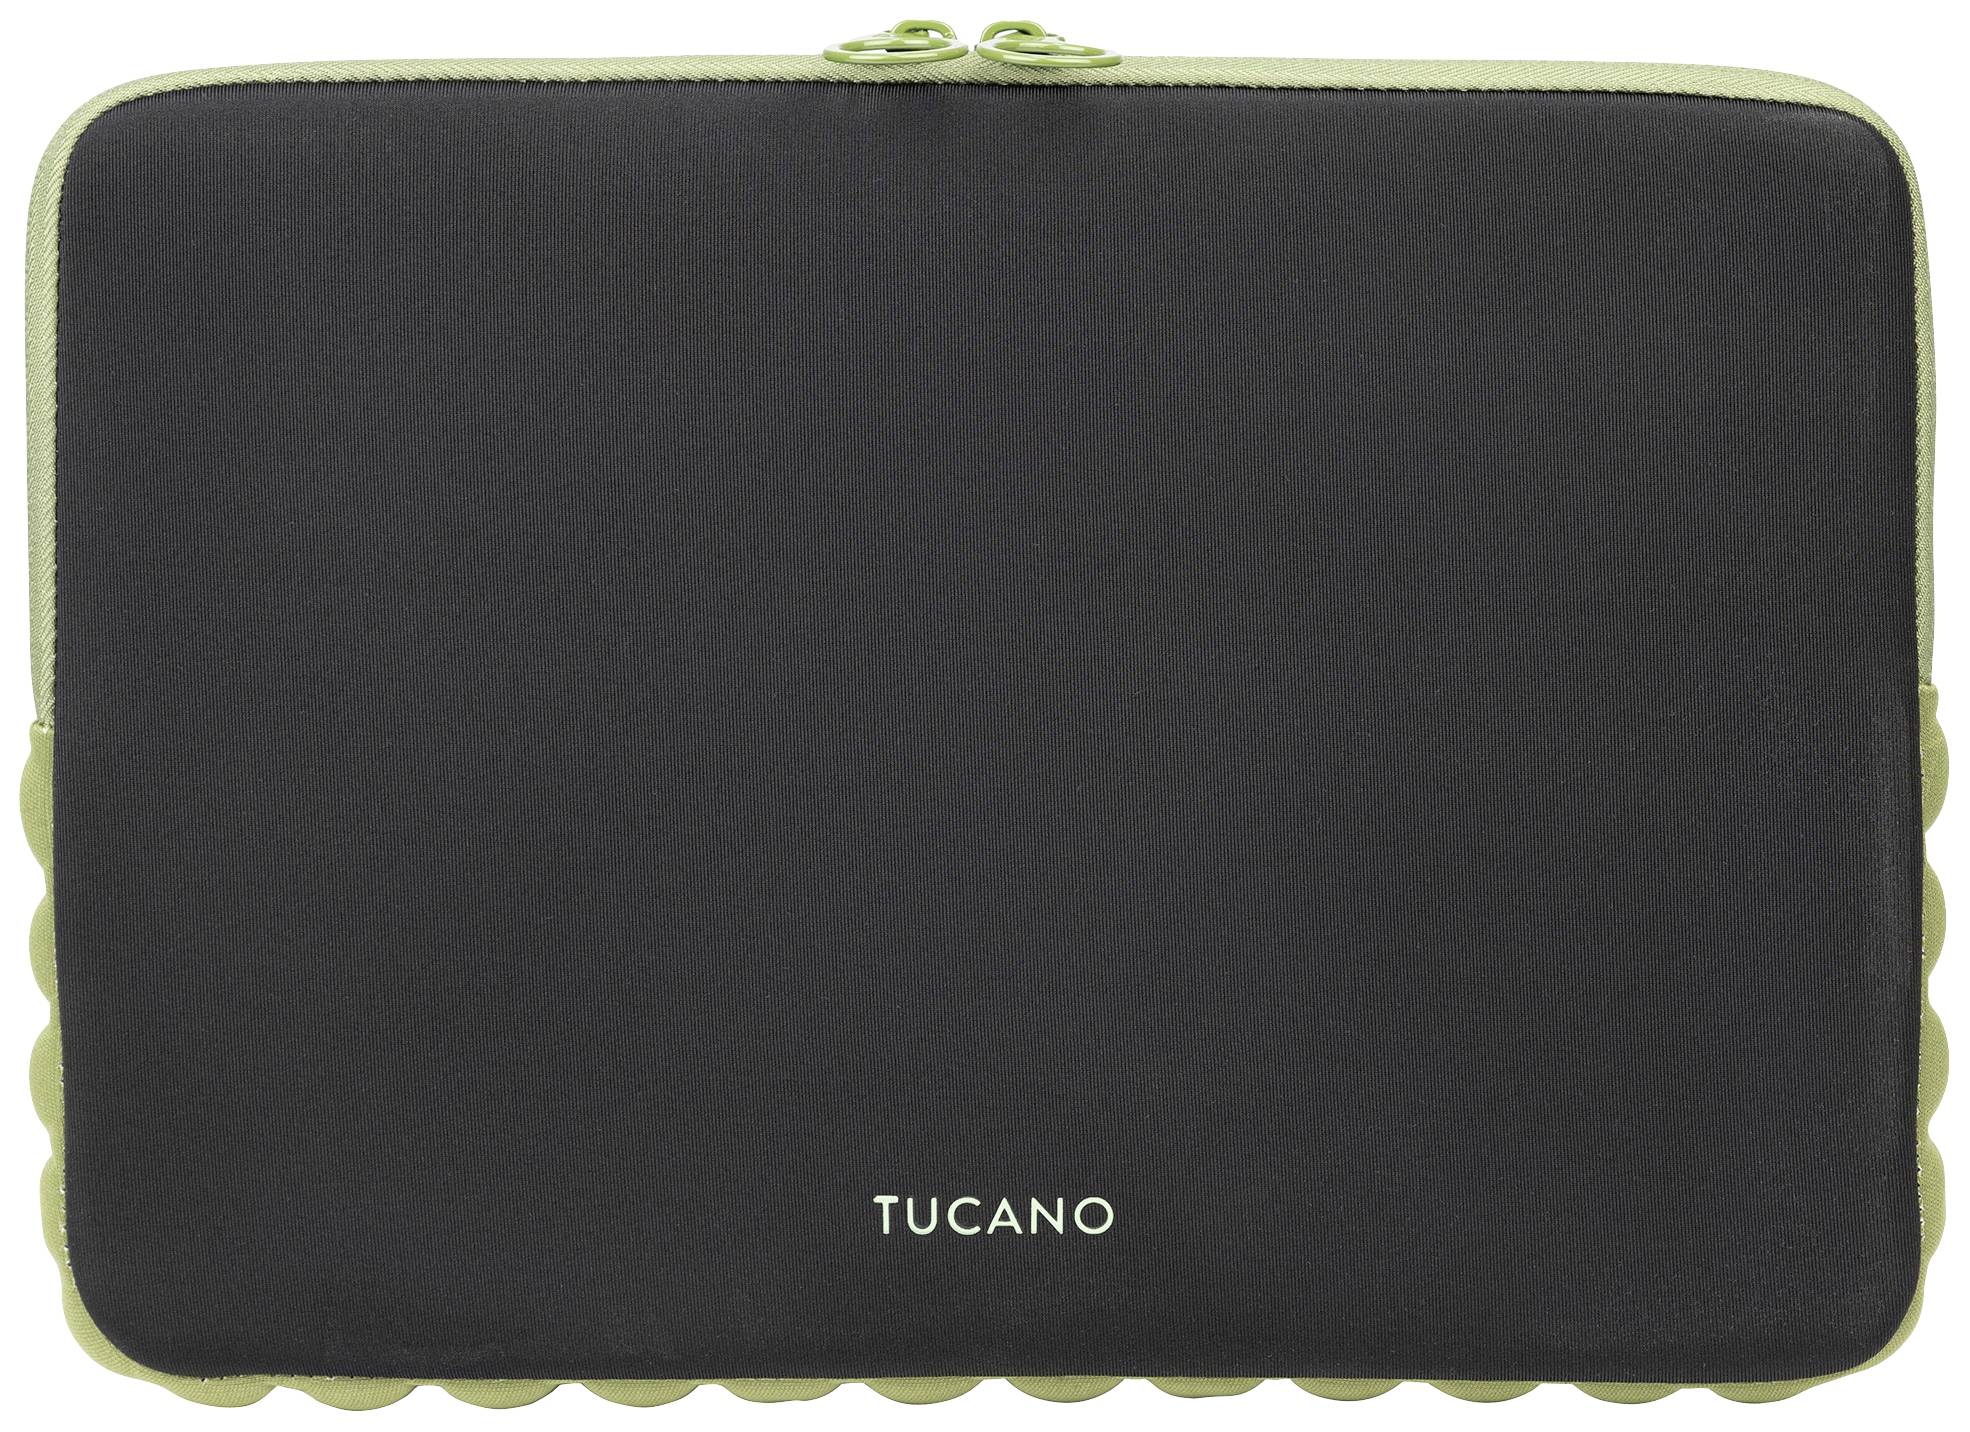 TUCANO Offroad Second Skin Bumper Case für Notebooks 12-13, schwarz